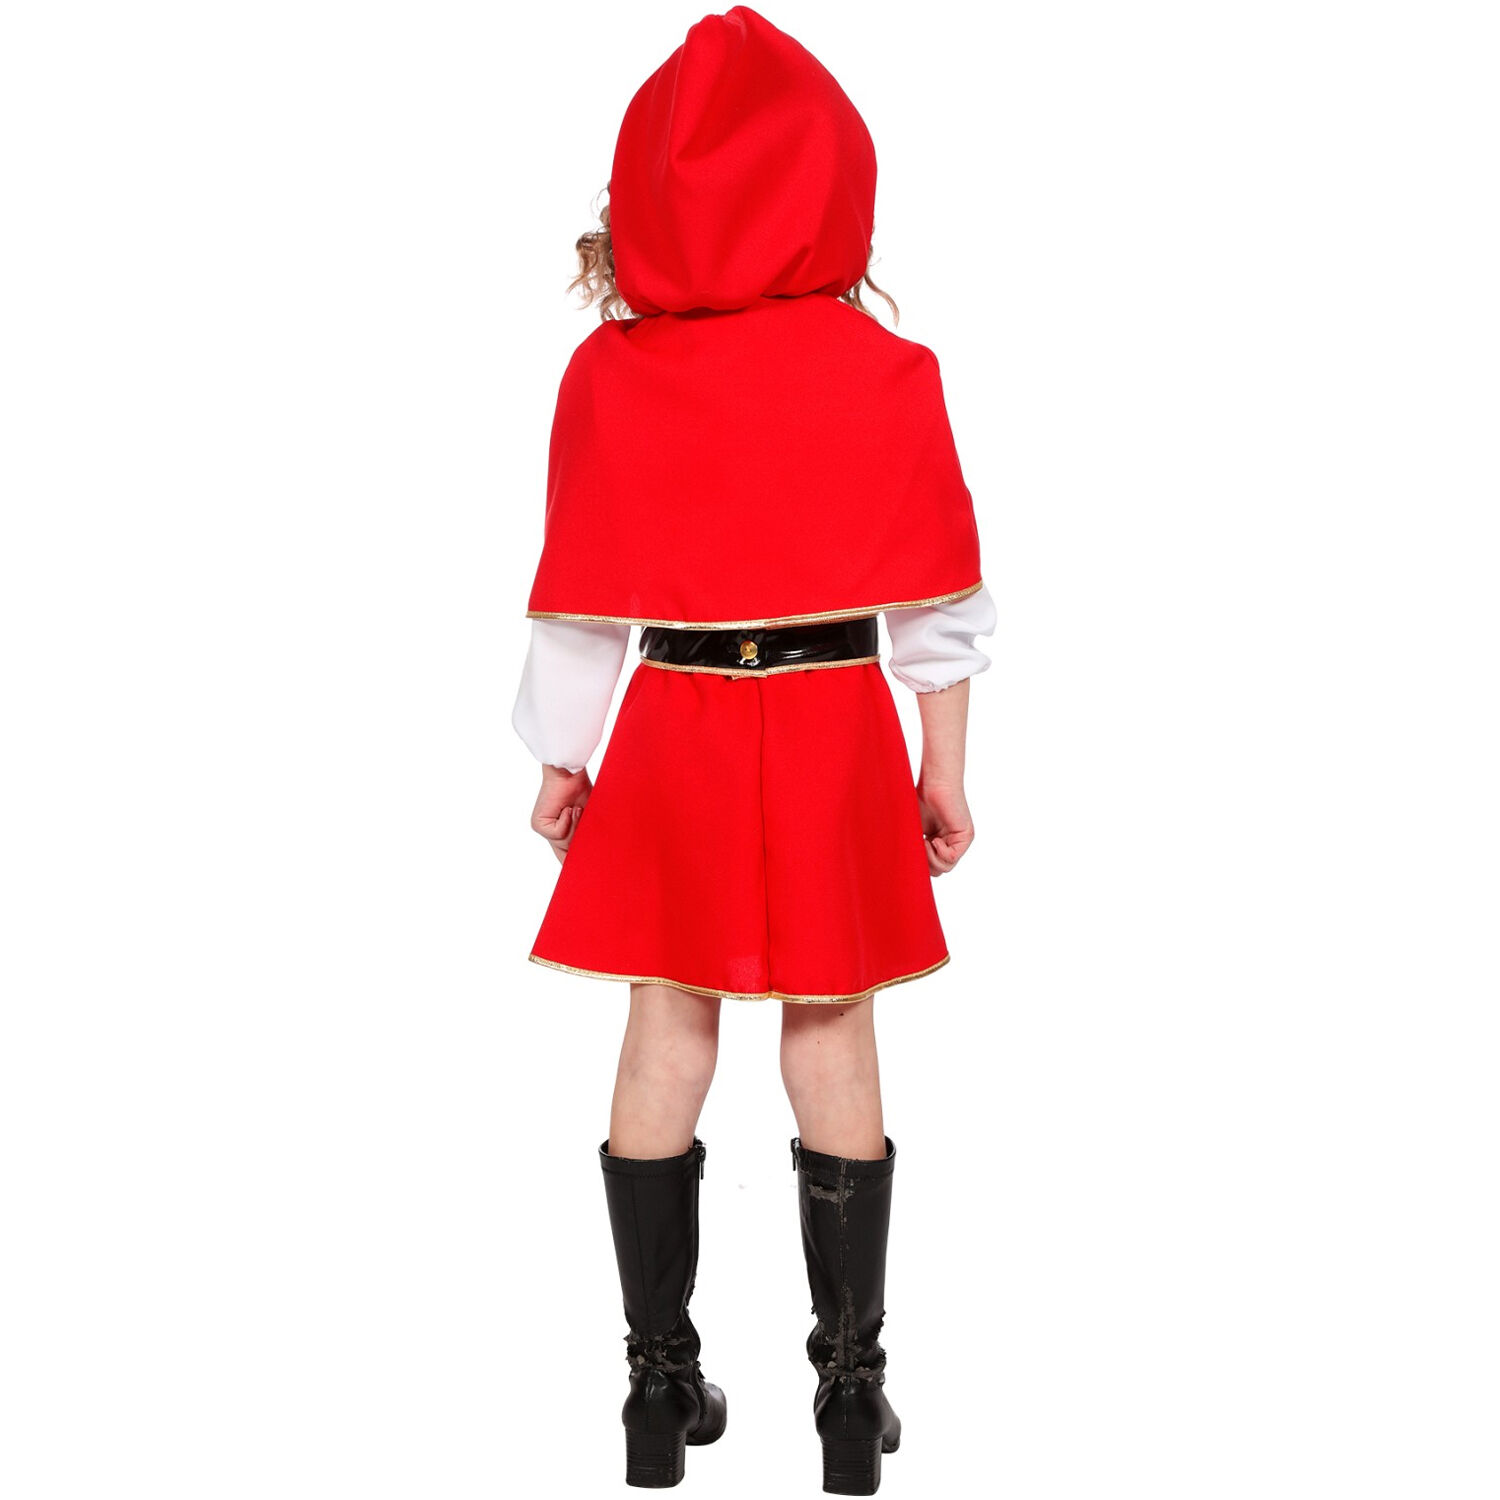 Kinder-Kostüm Rotkäppchen, Gr. 104 Bild 3